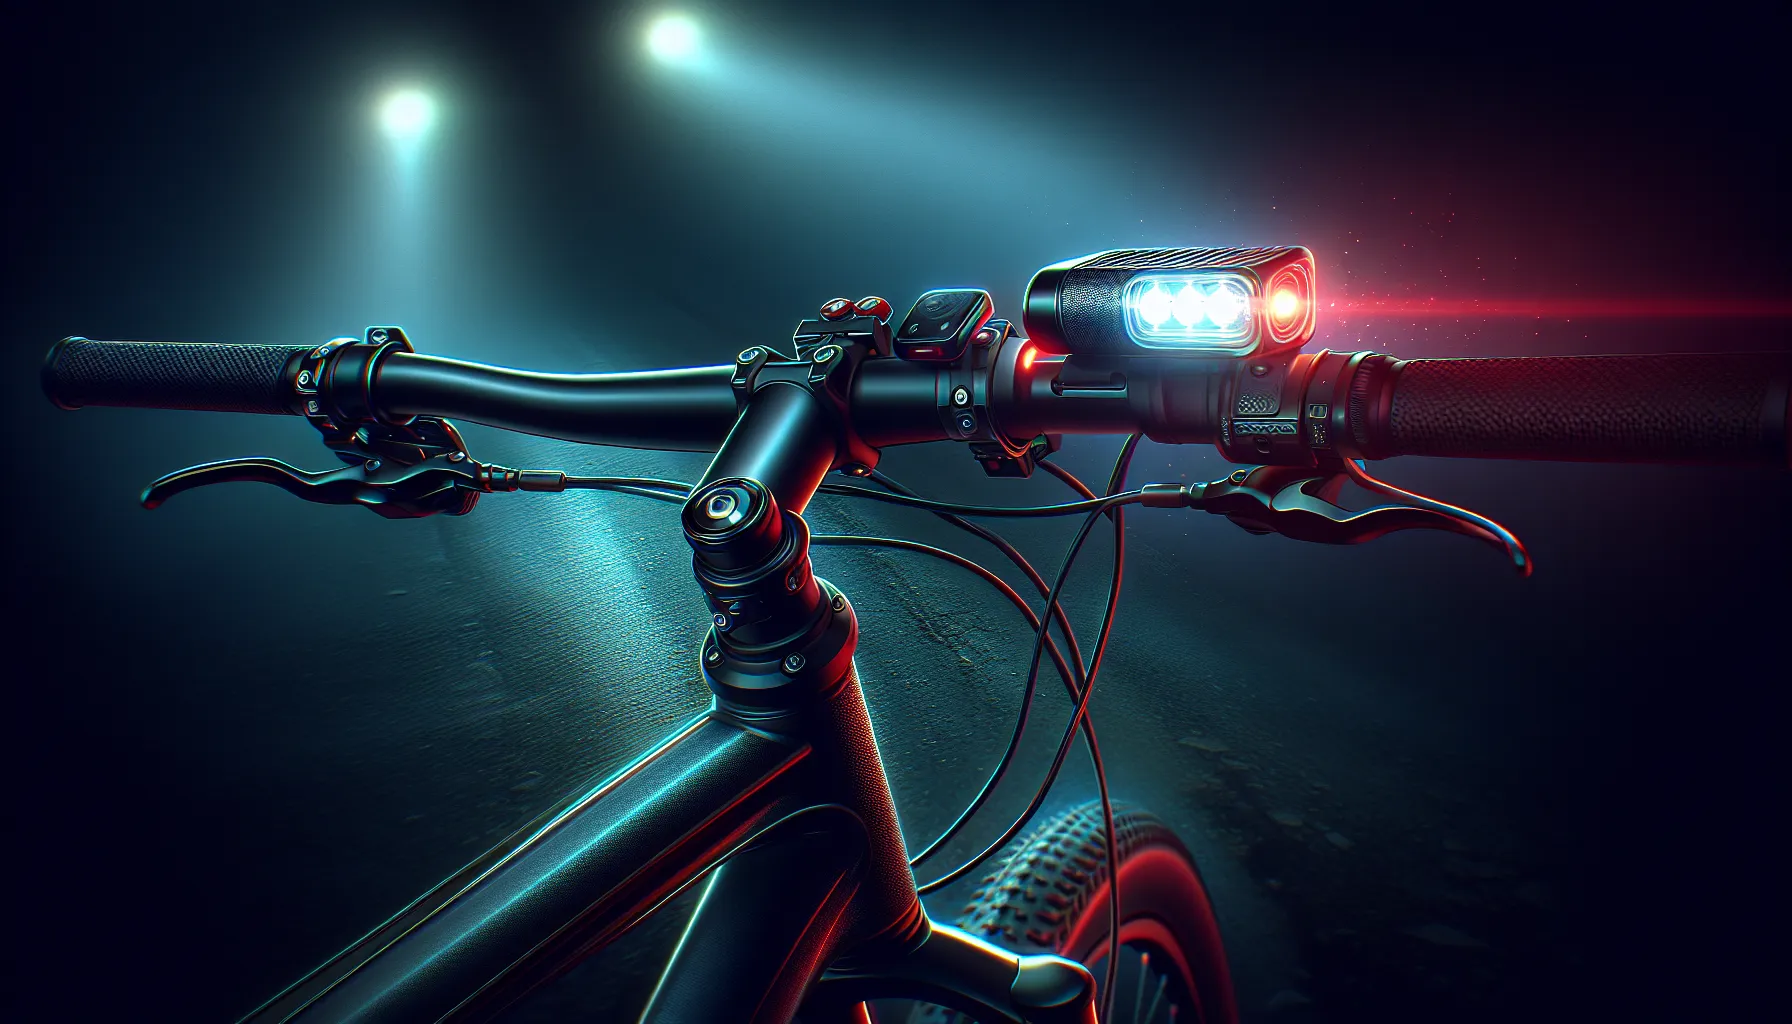 As luzes de bicicleta são essenciais para garantir a segurança do ciclista durante a noite ou em condições de pouca visibilidade. Aqui estão algumas dicas para escolher e usar as luzes de bicicleta de forma eficiente:

1. Escolha luzes de qualidade: Opte por luzes de bicicleta que sejam duráveis, resistentes à água e tenham boa potência de iluminação.